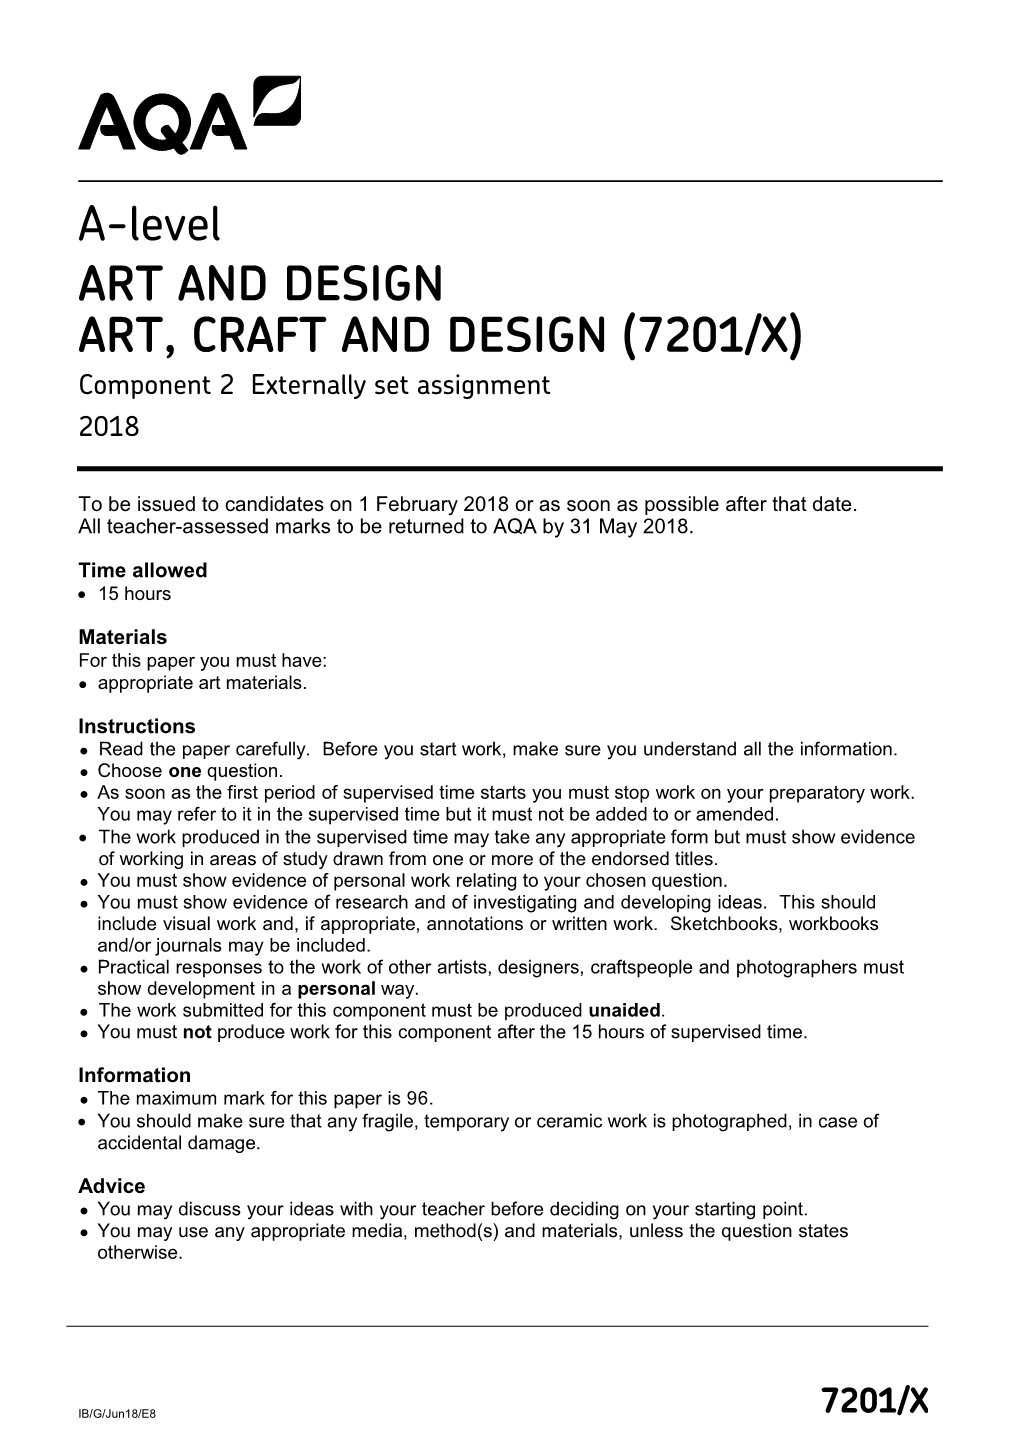 ART, CRAFT and DESIGN (7201/X) Component 2 Externally Set Assignment 2018